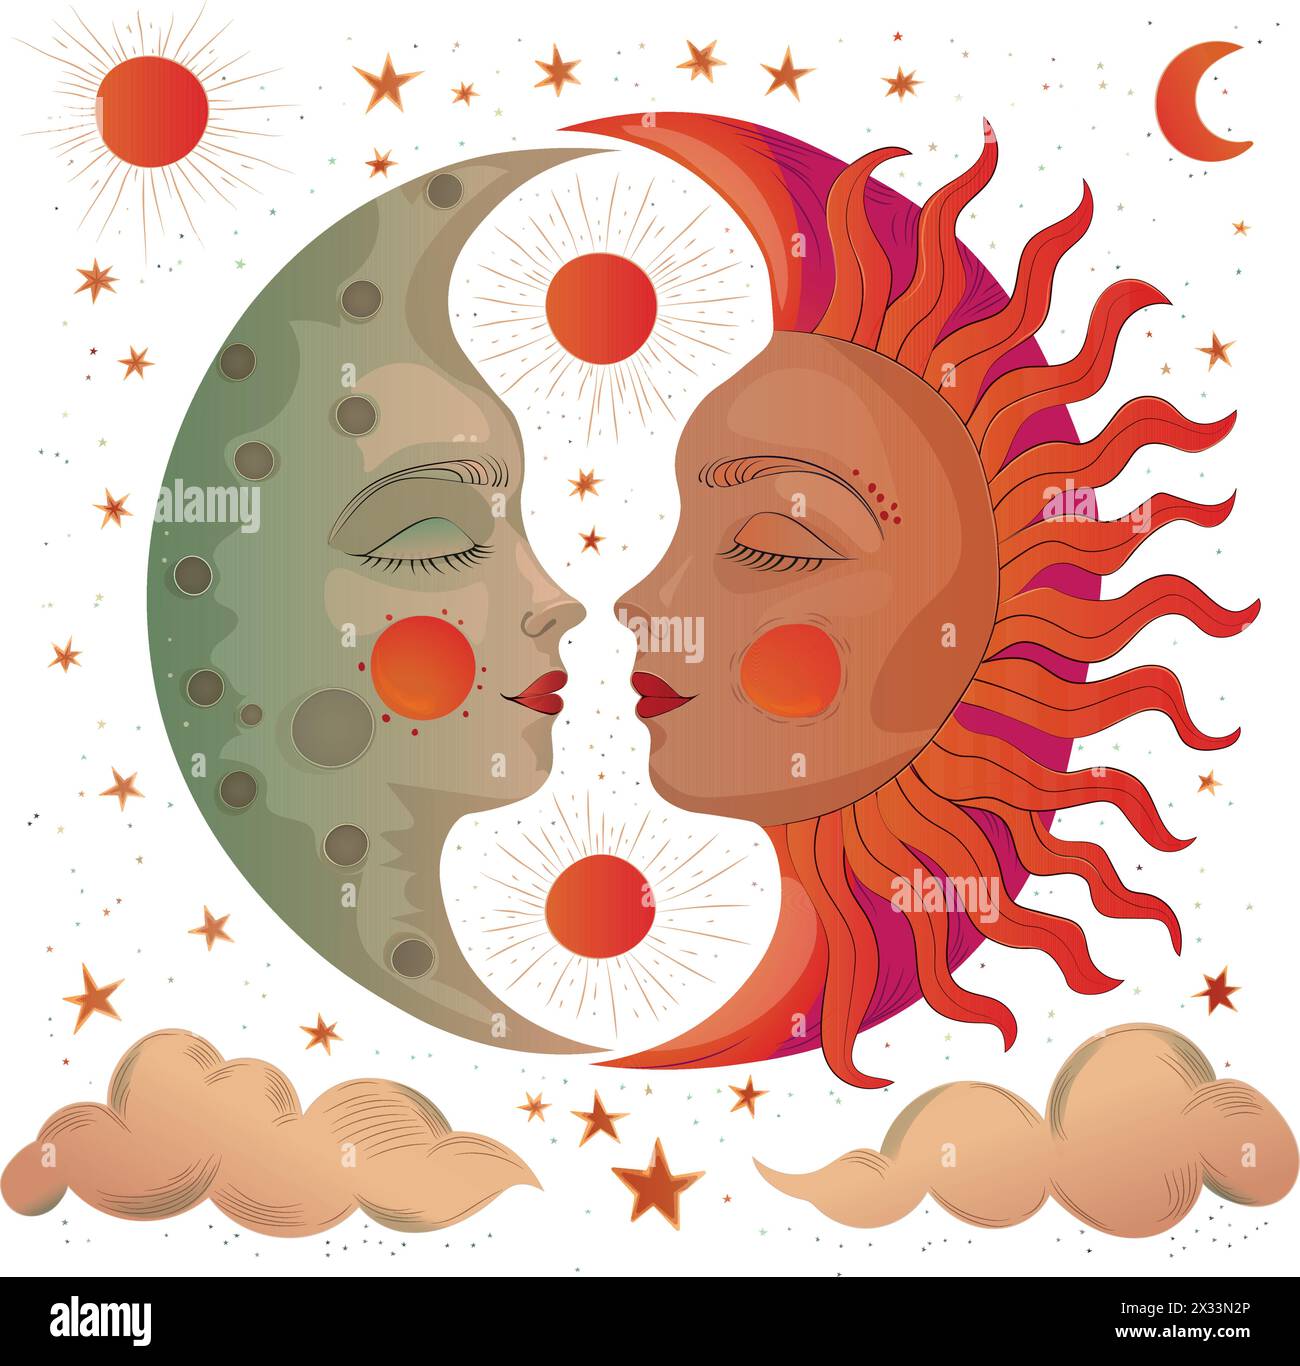 Semplice disegno per la copertina di un libro per bambini che raffigura il favoloso sole e luna slavi Illustrazione Vettoriale